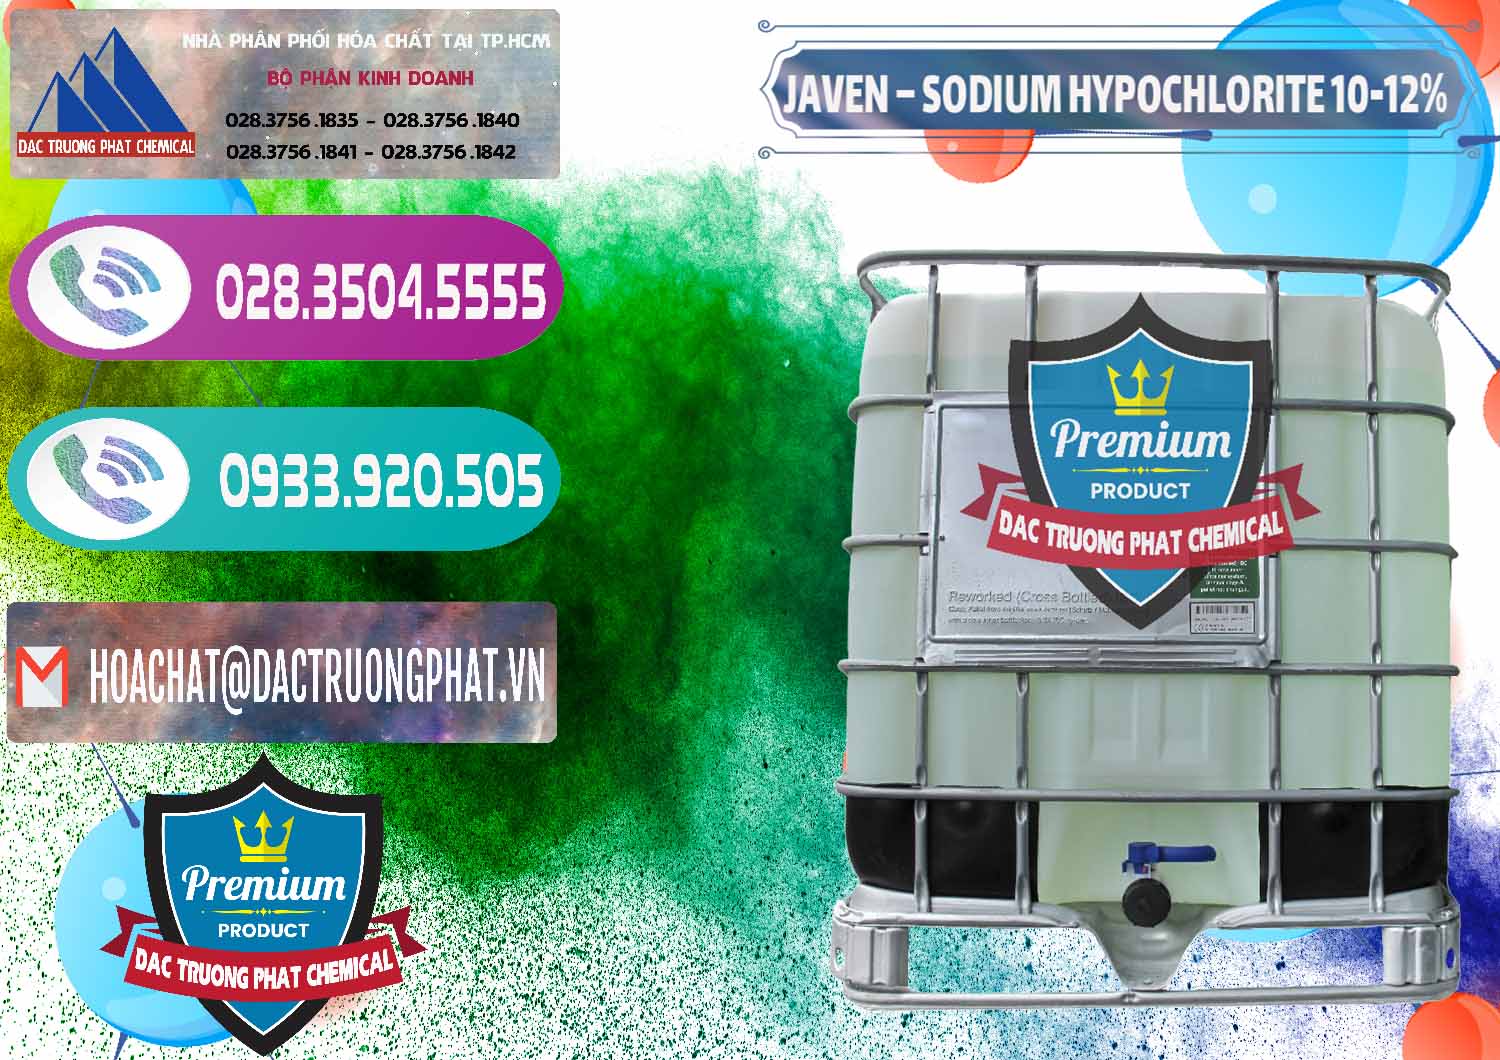 Cty phân phối _ bán Javen - Sodium Hypochlorite 10-12% Việt Nam - 0188 - Cty cung ứng - phân phối hóa chất tại TP.HCM - hoachatxulynuoc.com